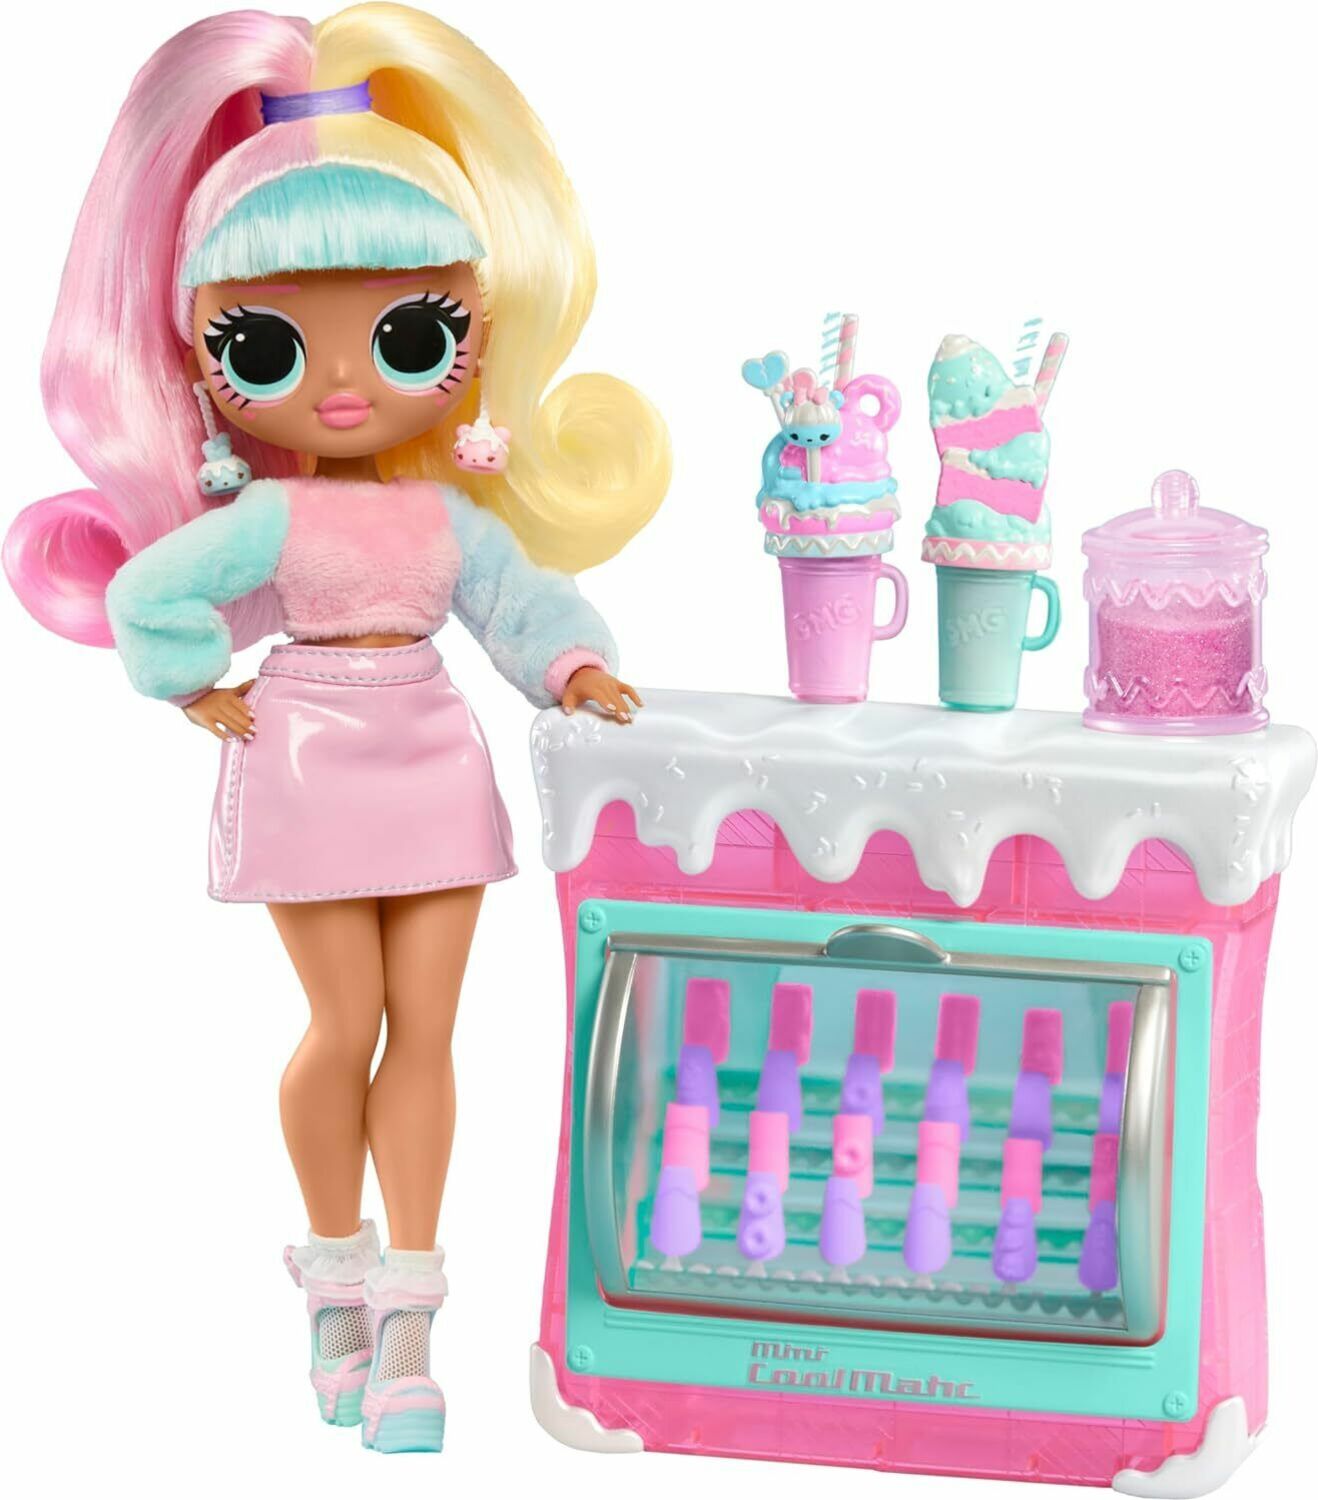 Cibo in miniatura per Bambole e Barbie, dove trovarlo?